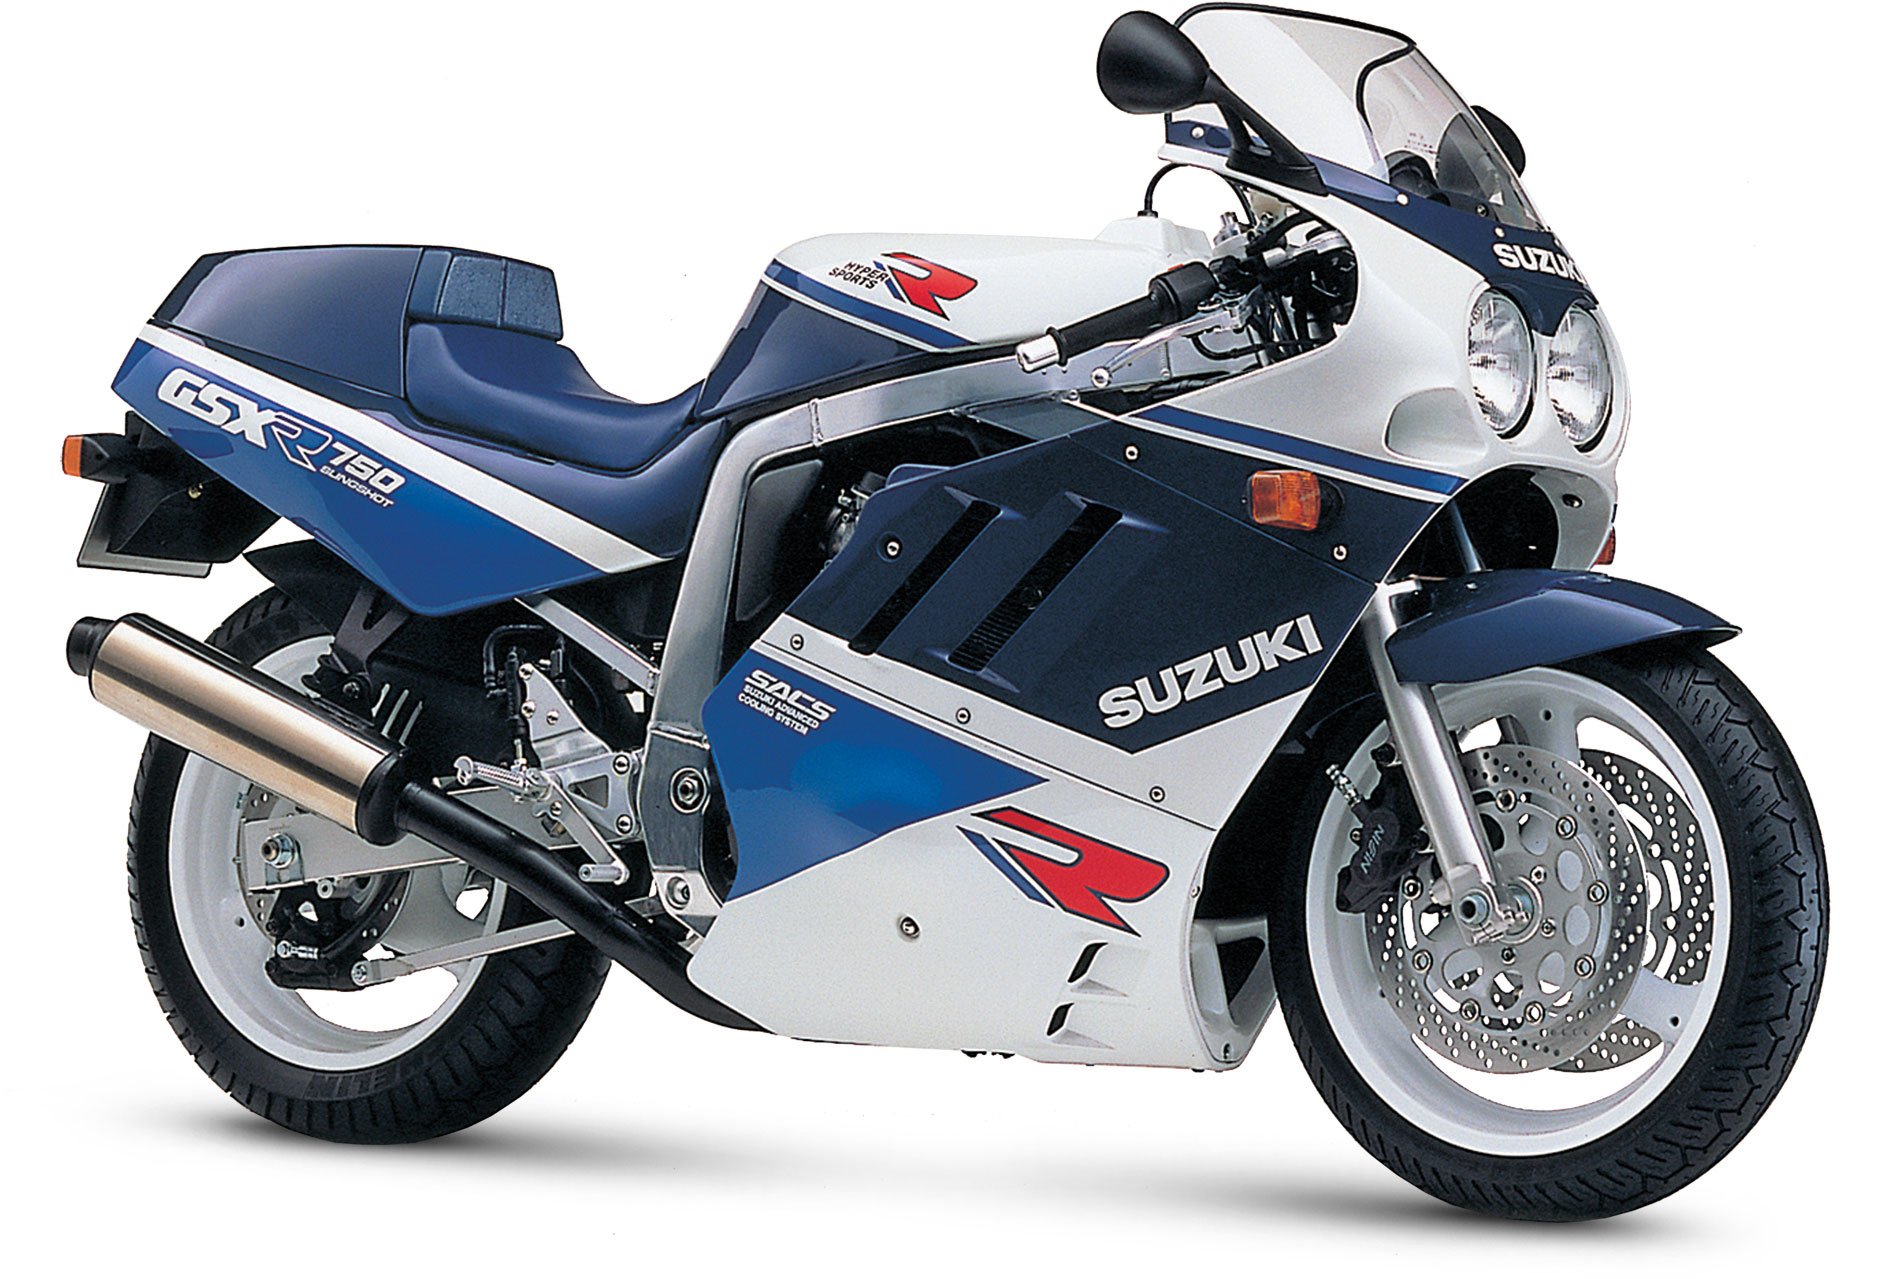 1989, Suzuki, Gsx r750, Motorcycles Wallpaper